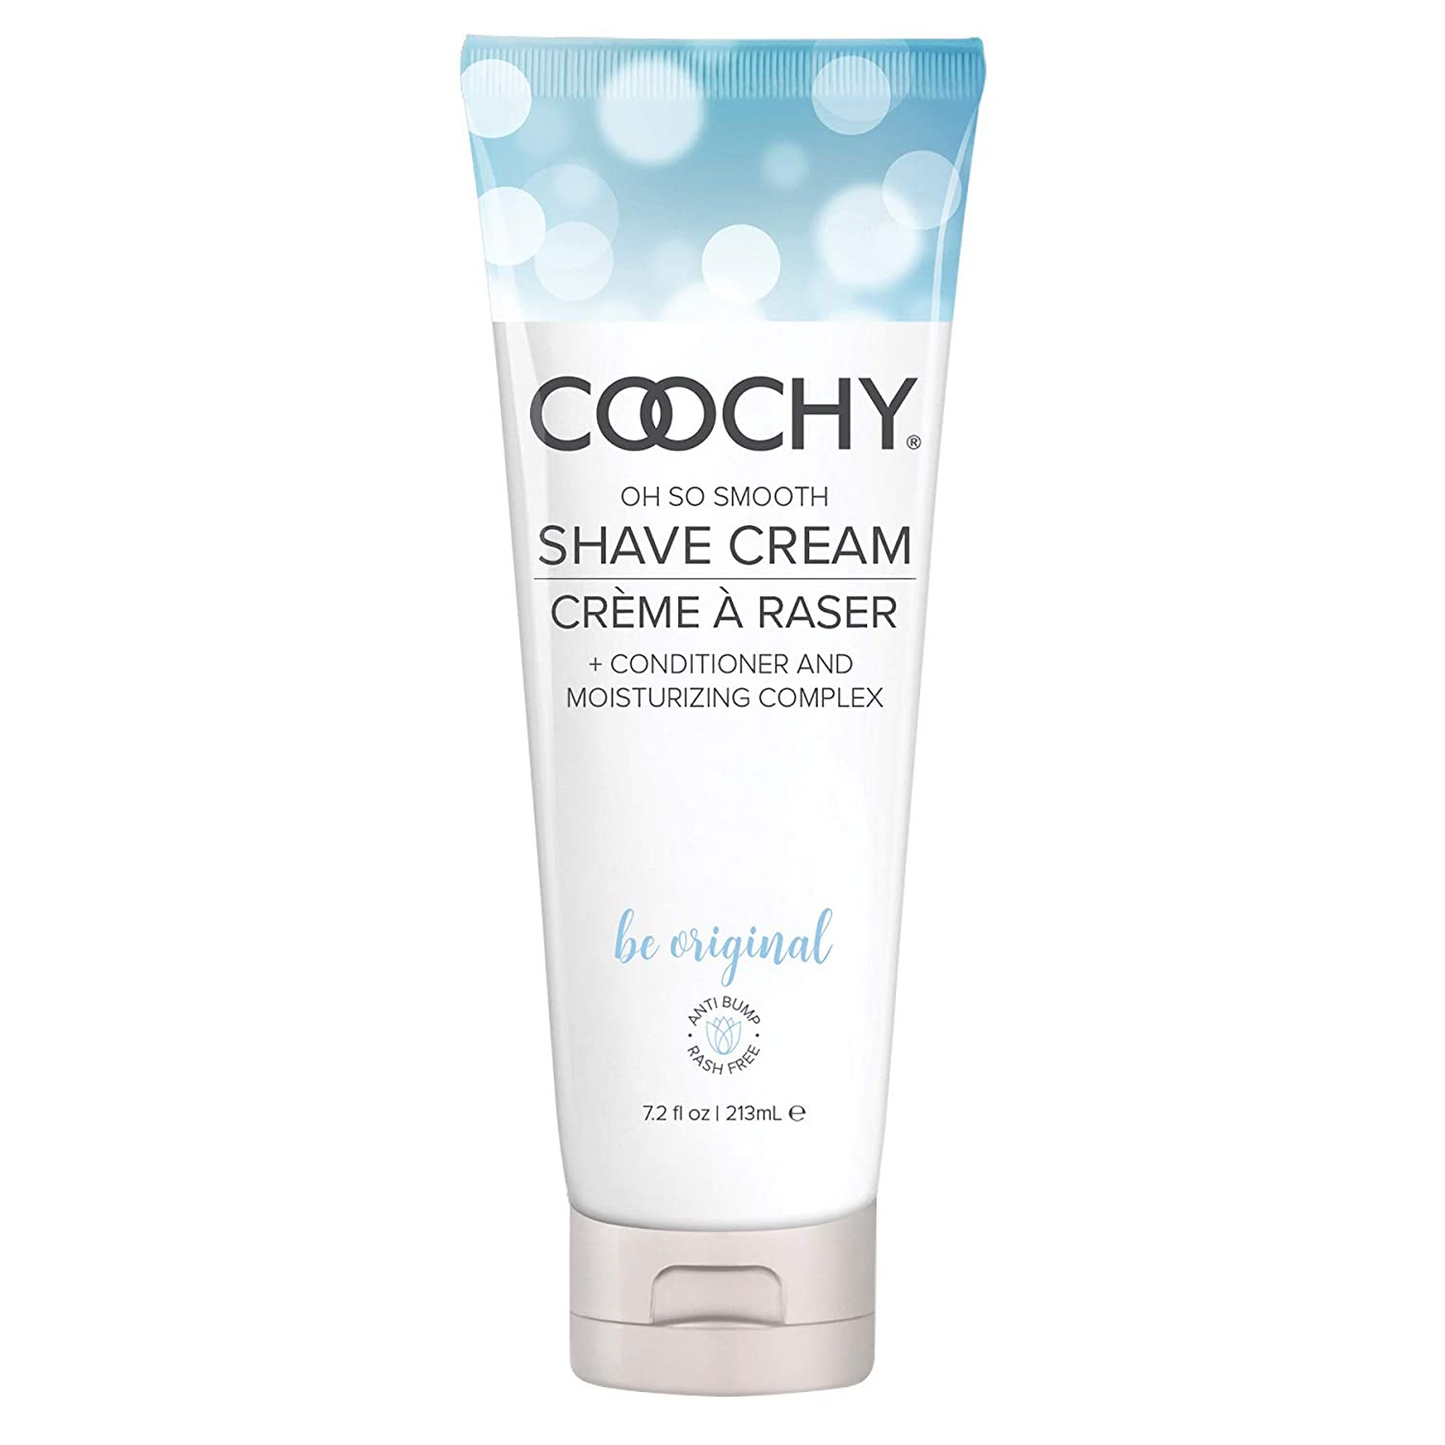 Coochy Cream - Be Original 7.2oz